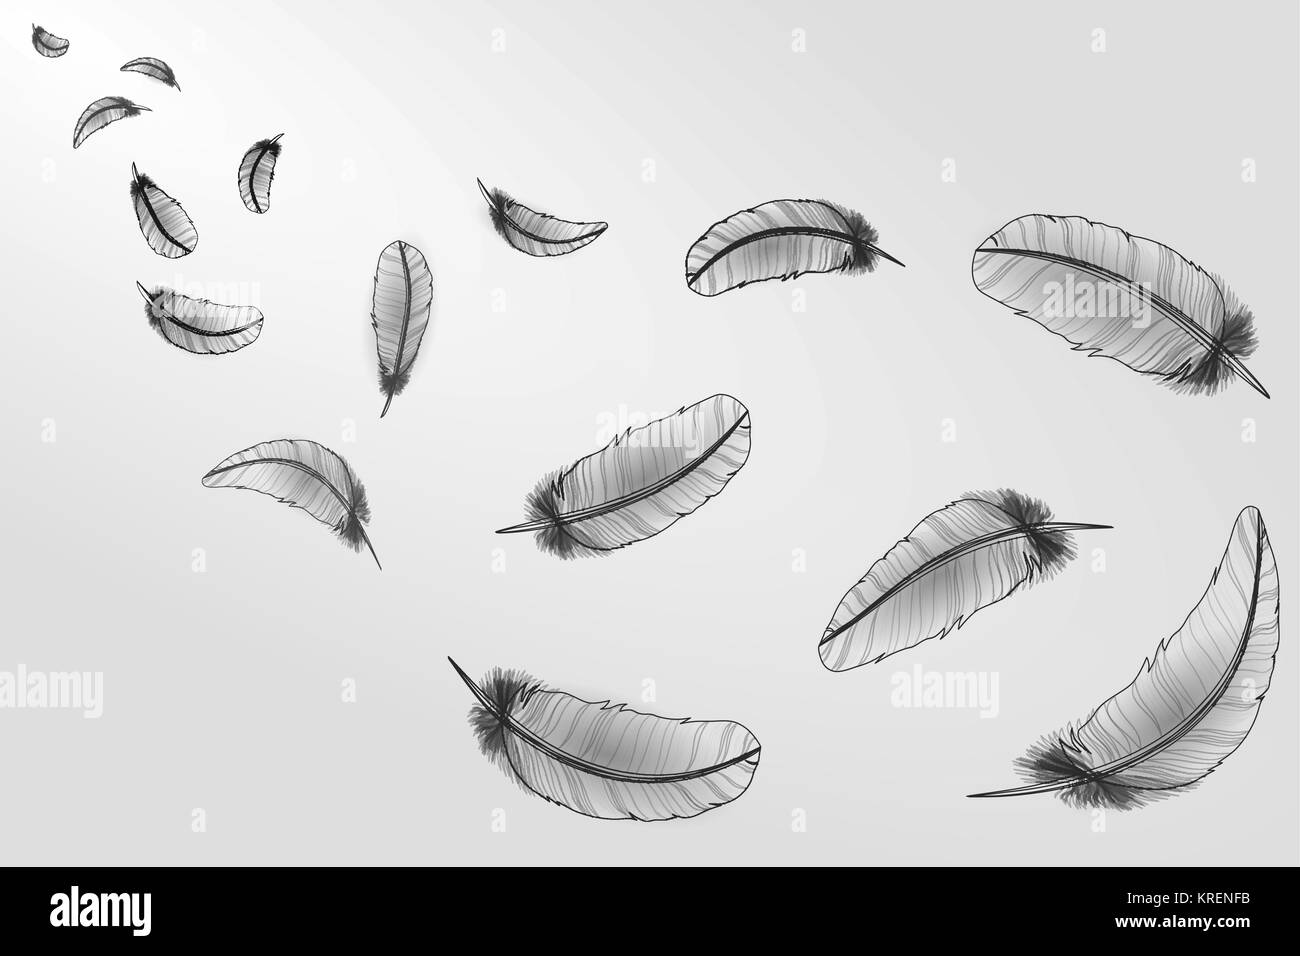 Realistico bianco grigio sketch linea di piume di cigno neon bird.La caduta di vento luce volanti composizione astratta illustrazione vettoriale Illustrazione Vettoriale